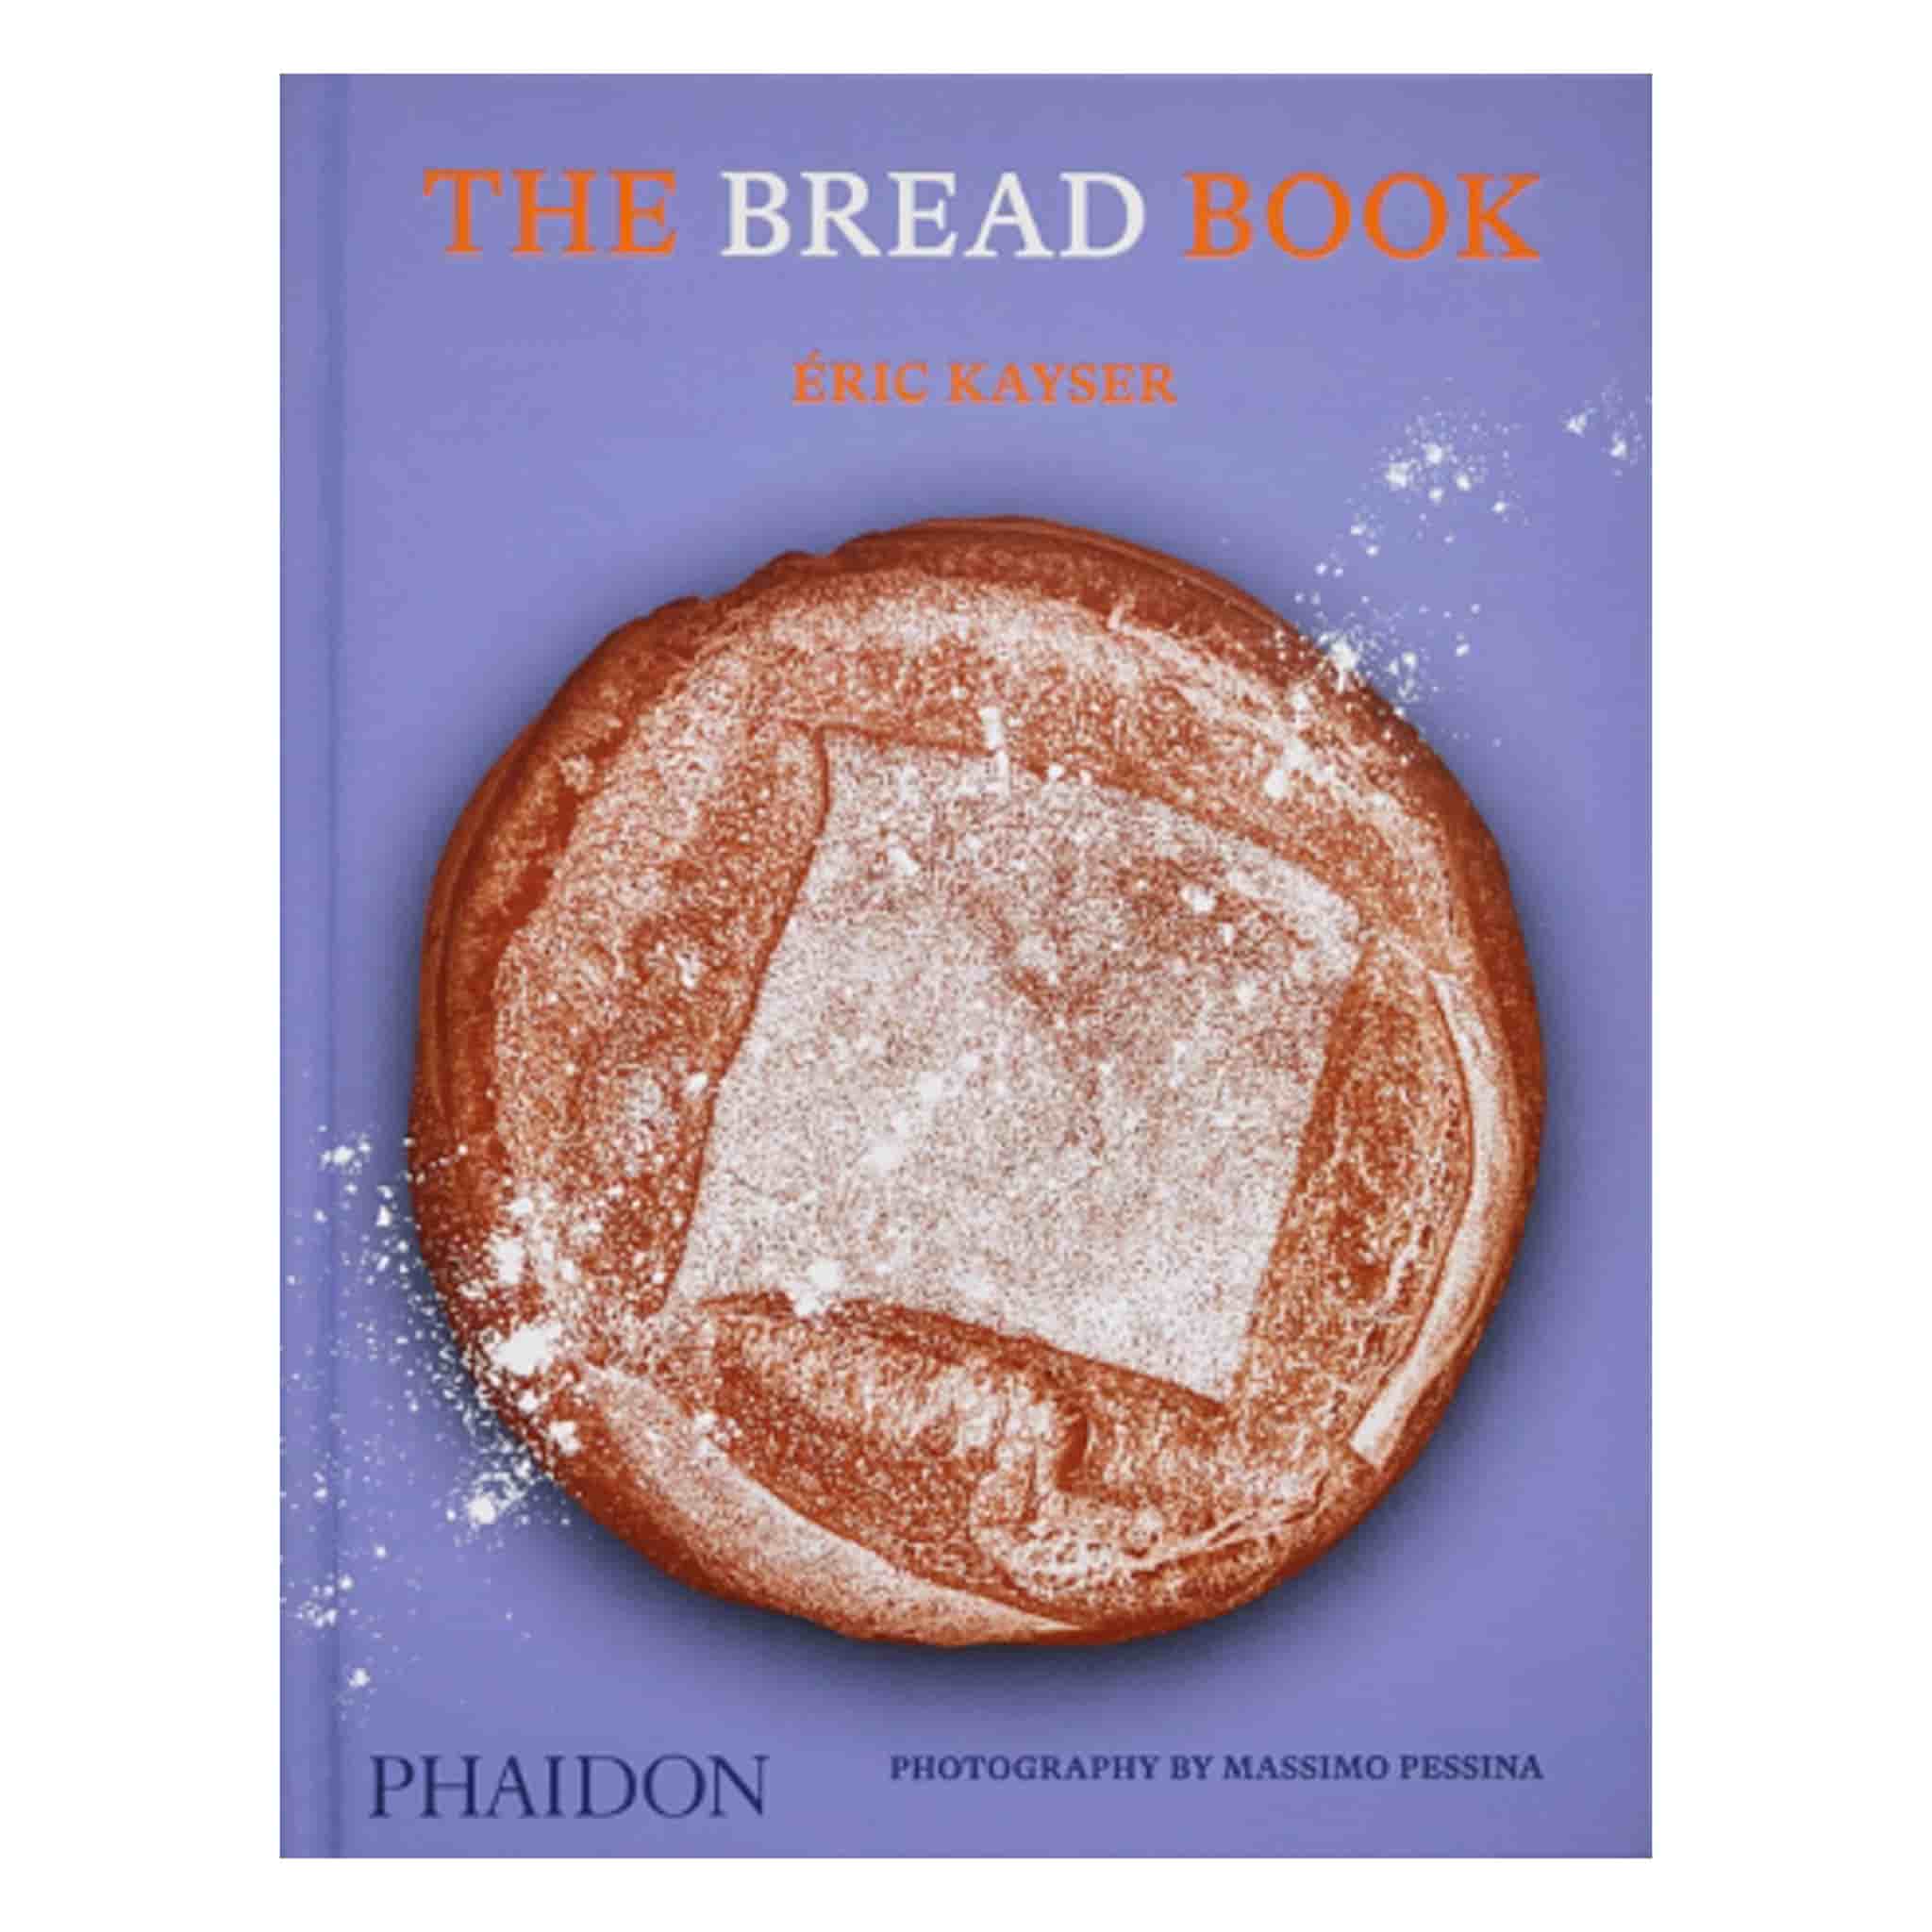 The Bread Book [Book]